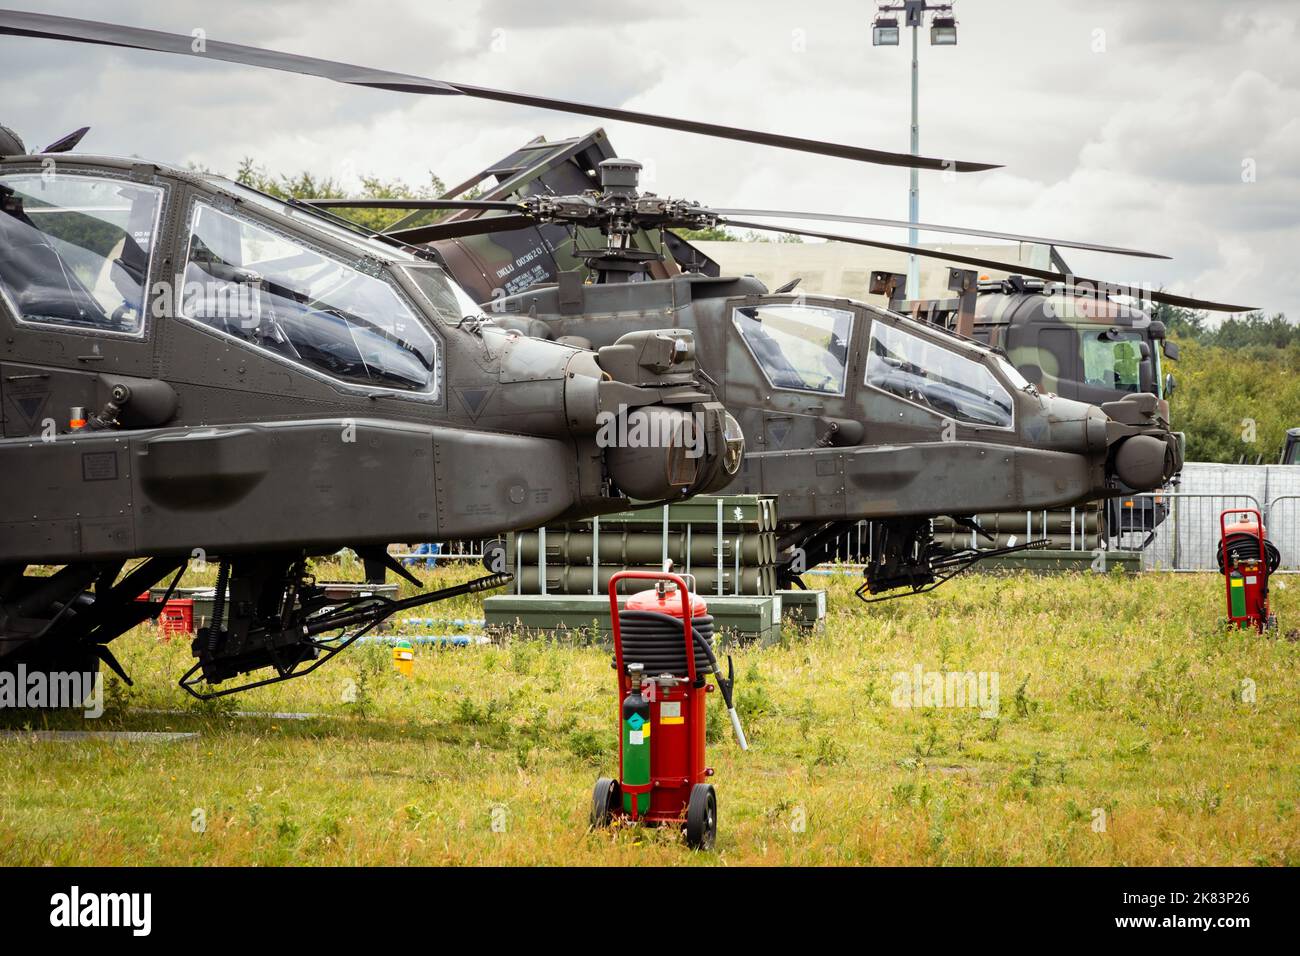 Helicópteros Boeing AH-64 Appache de ataque en la Base Aérea Gilze-Rijen, Países Bajos - 20 de junio de 2014 Foto de stock